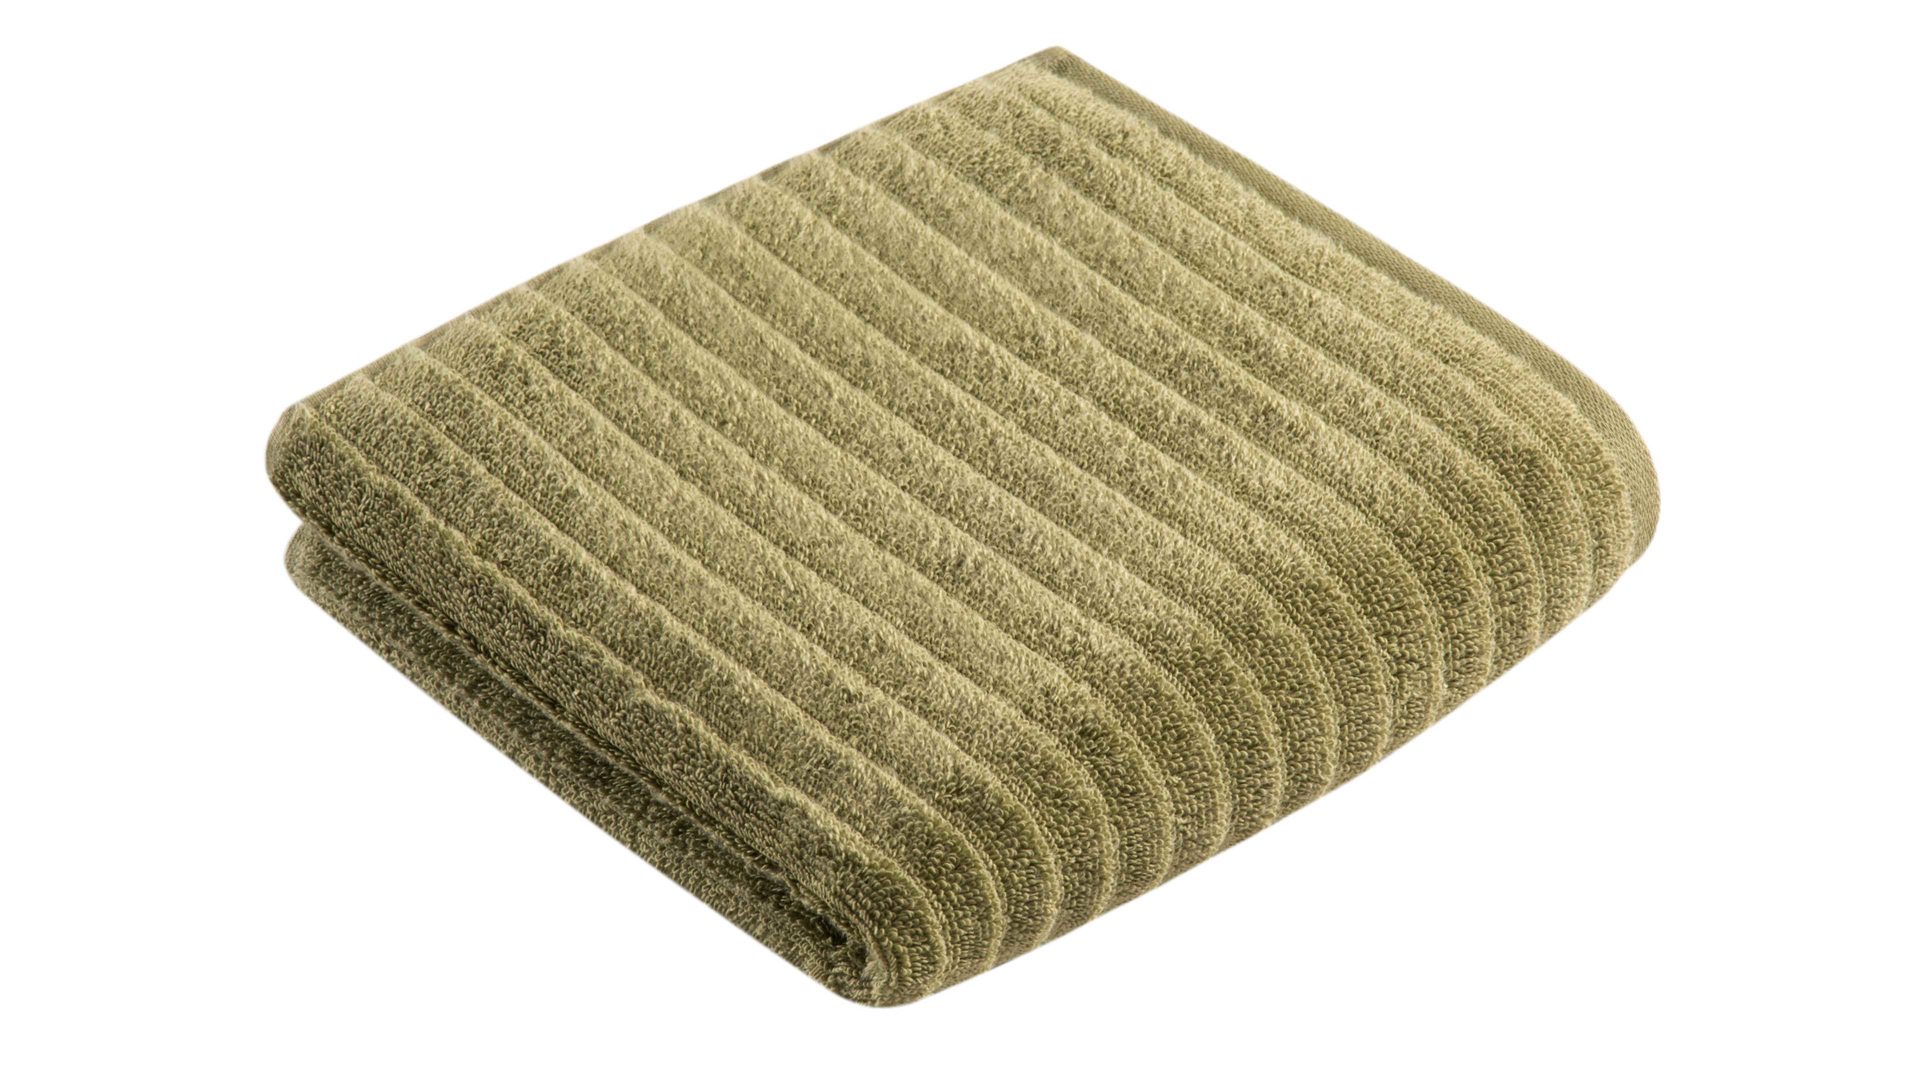 Handtuch Vossen aus Naturfaser in Hellgrün VOSSEN® Frottee-Serie Mystic - Handtuch farngrüne Baumwolle - ca. 60 x 110 cm